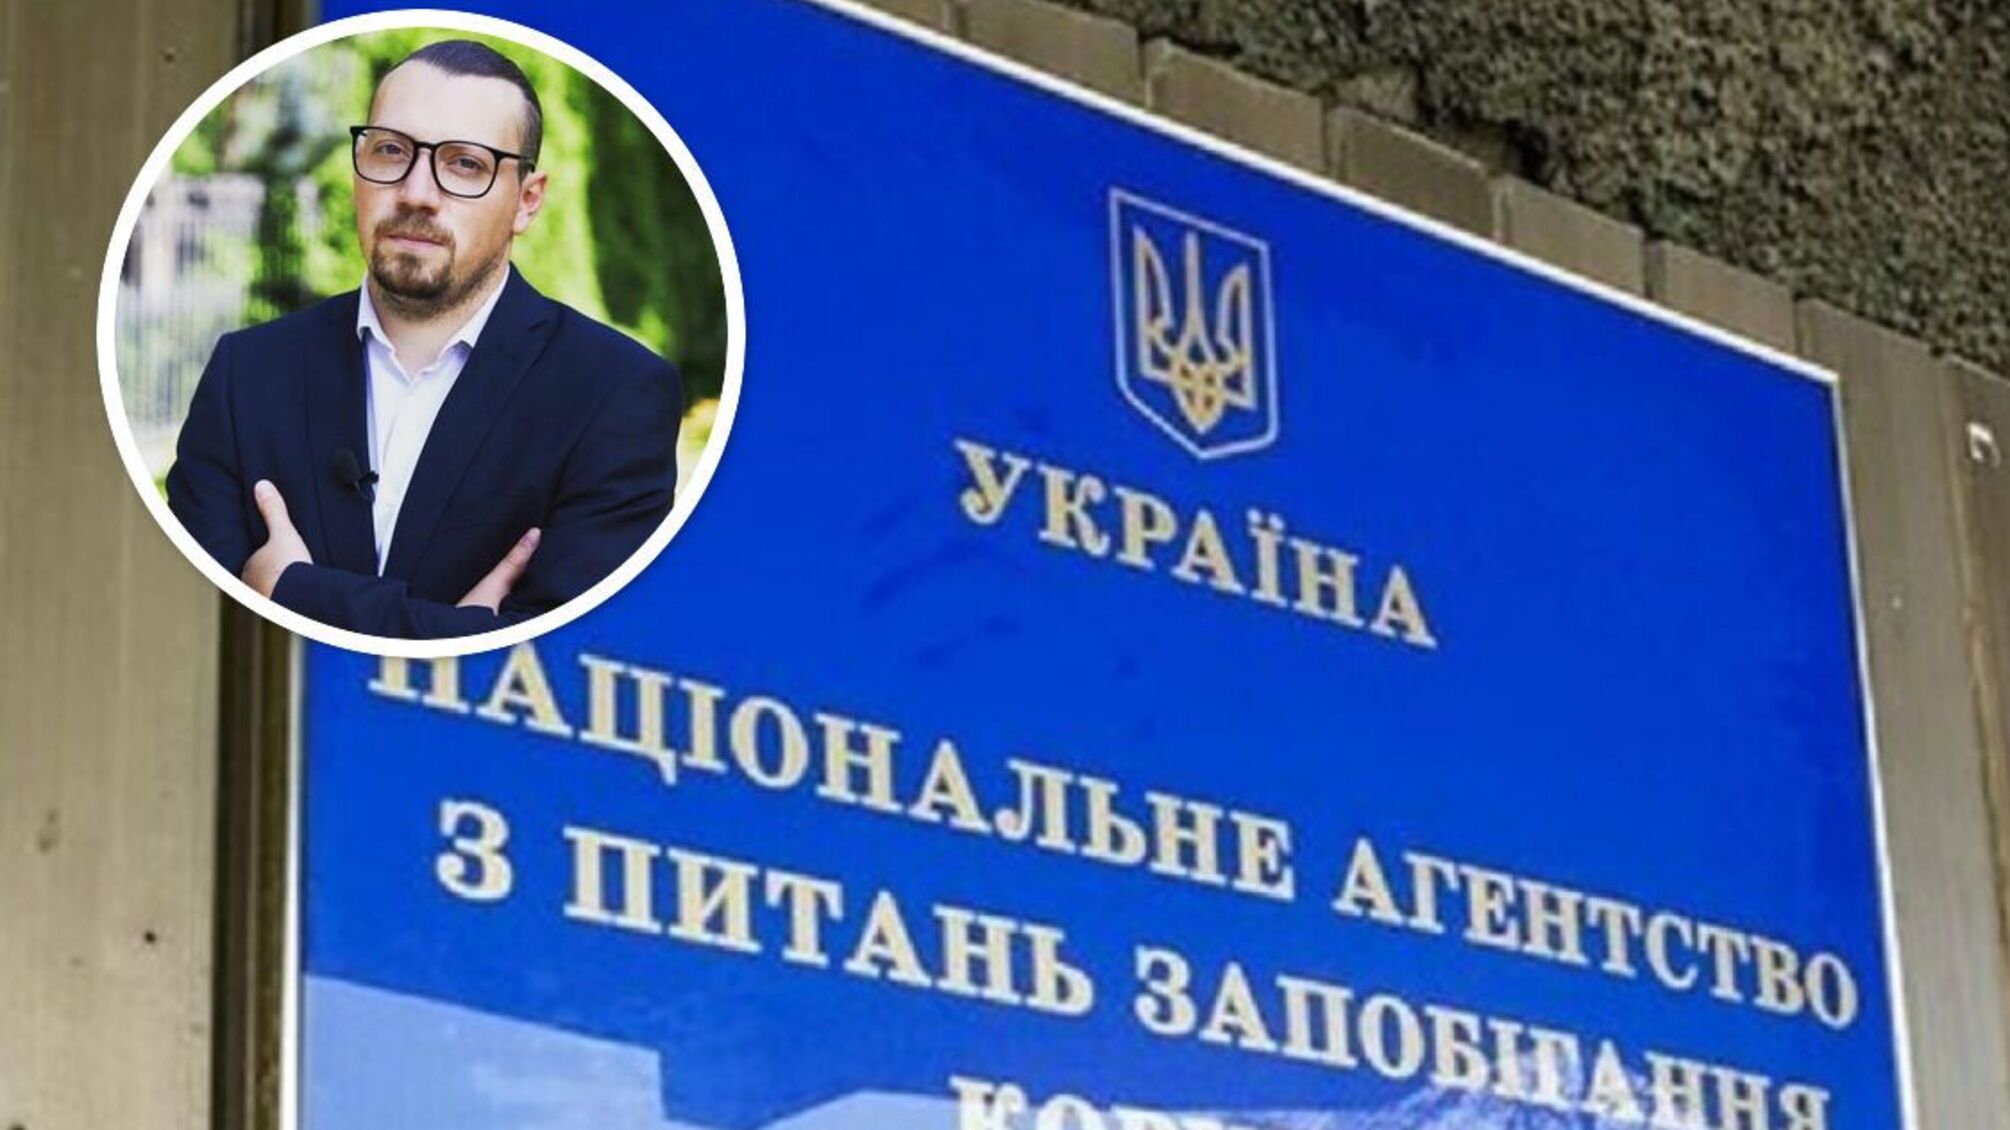 Крымской недвижимостью и пророссийскими связями нардепа Безгина займутся НАПК и прокуратура?